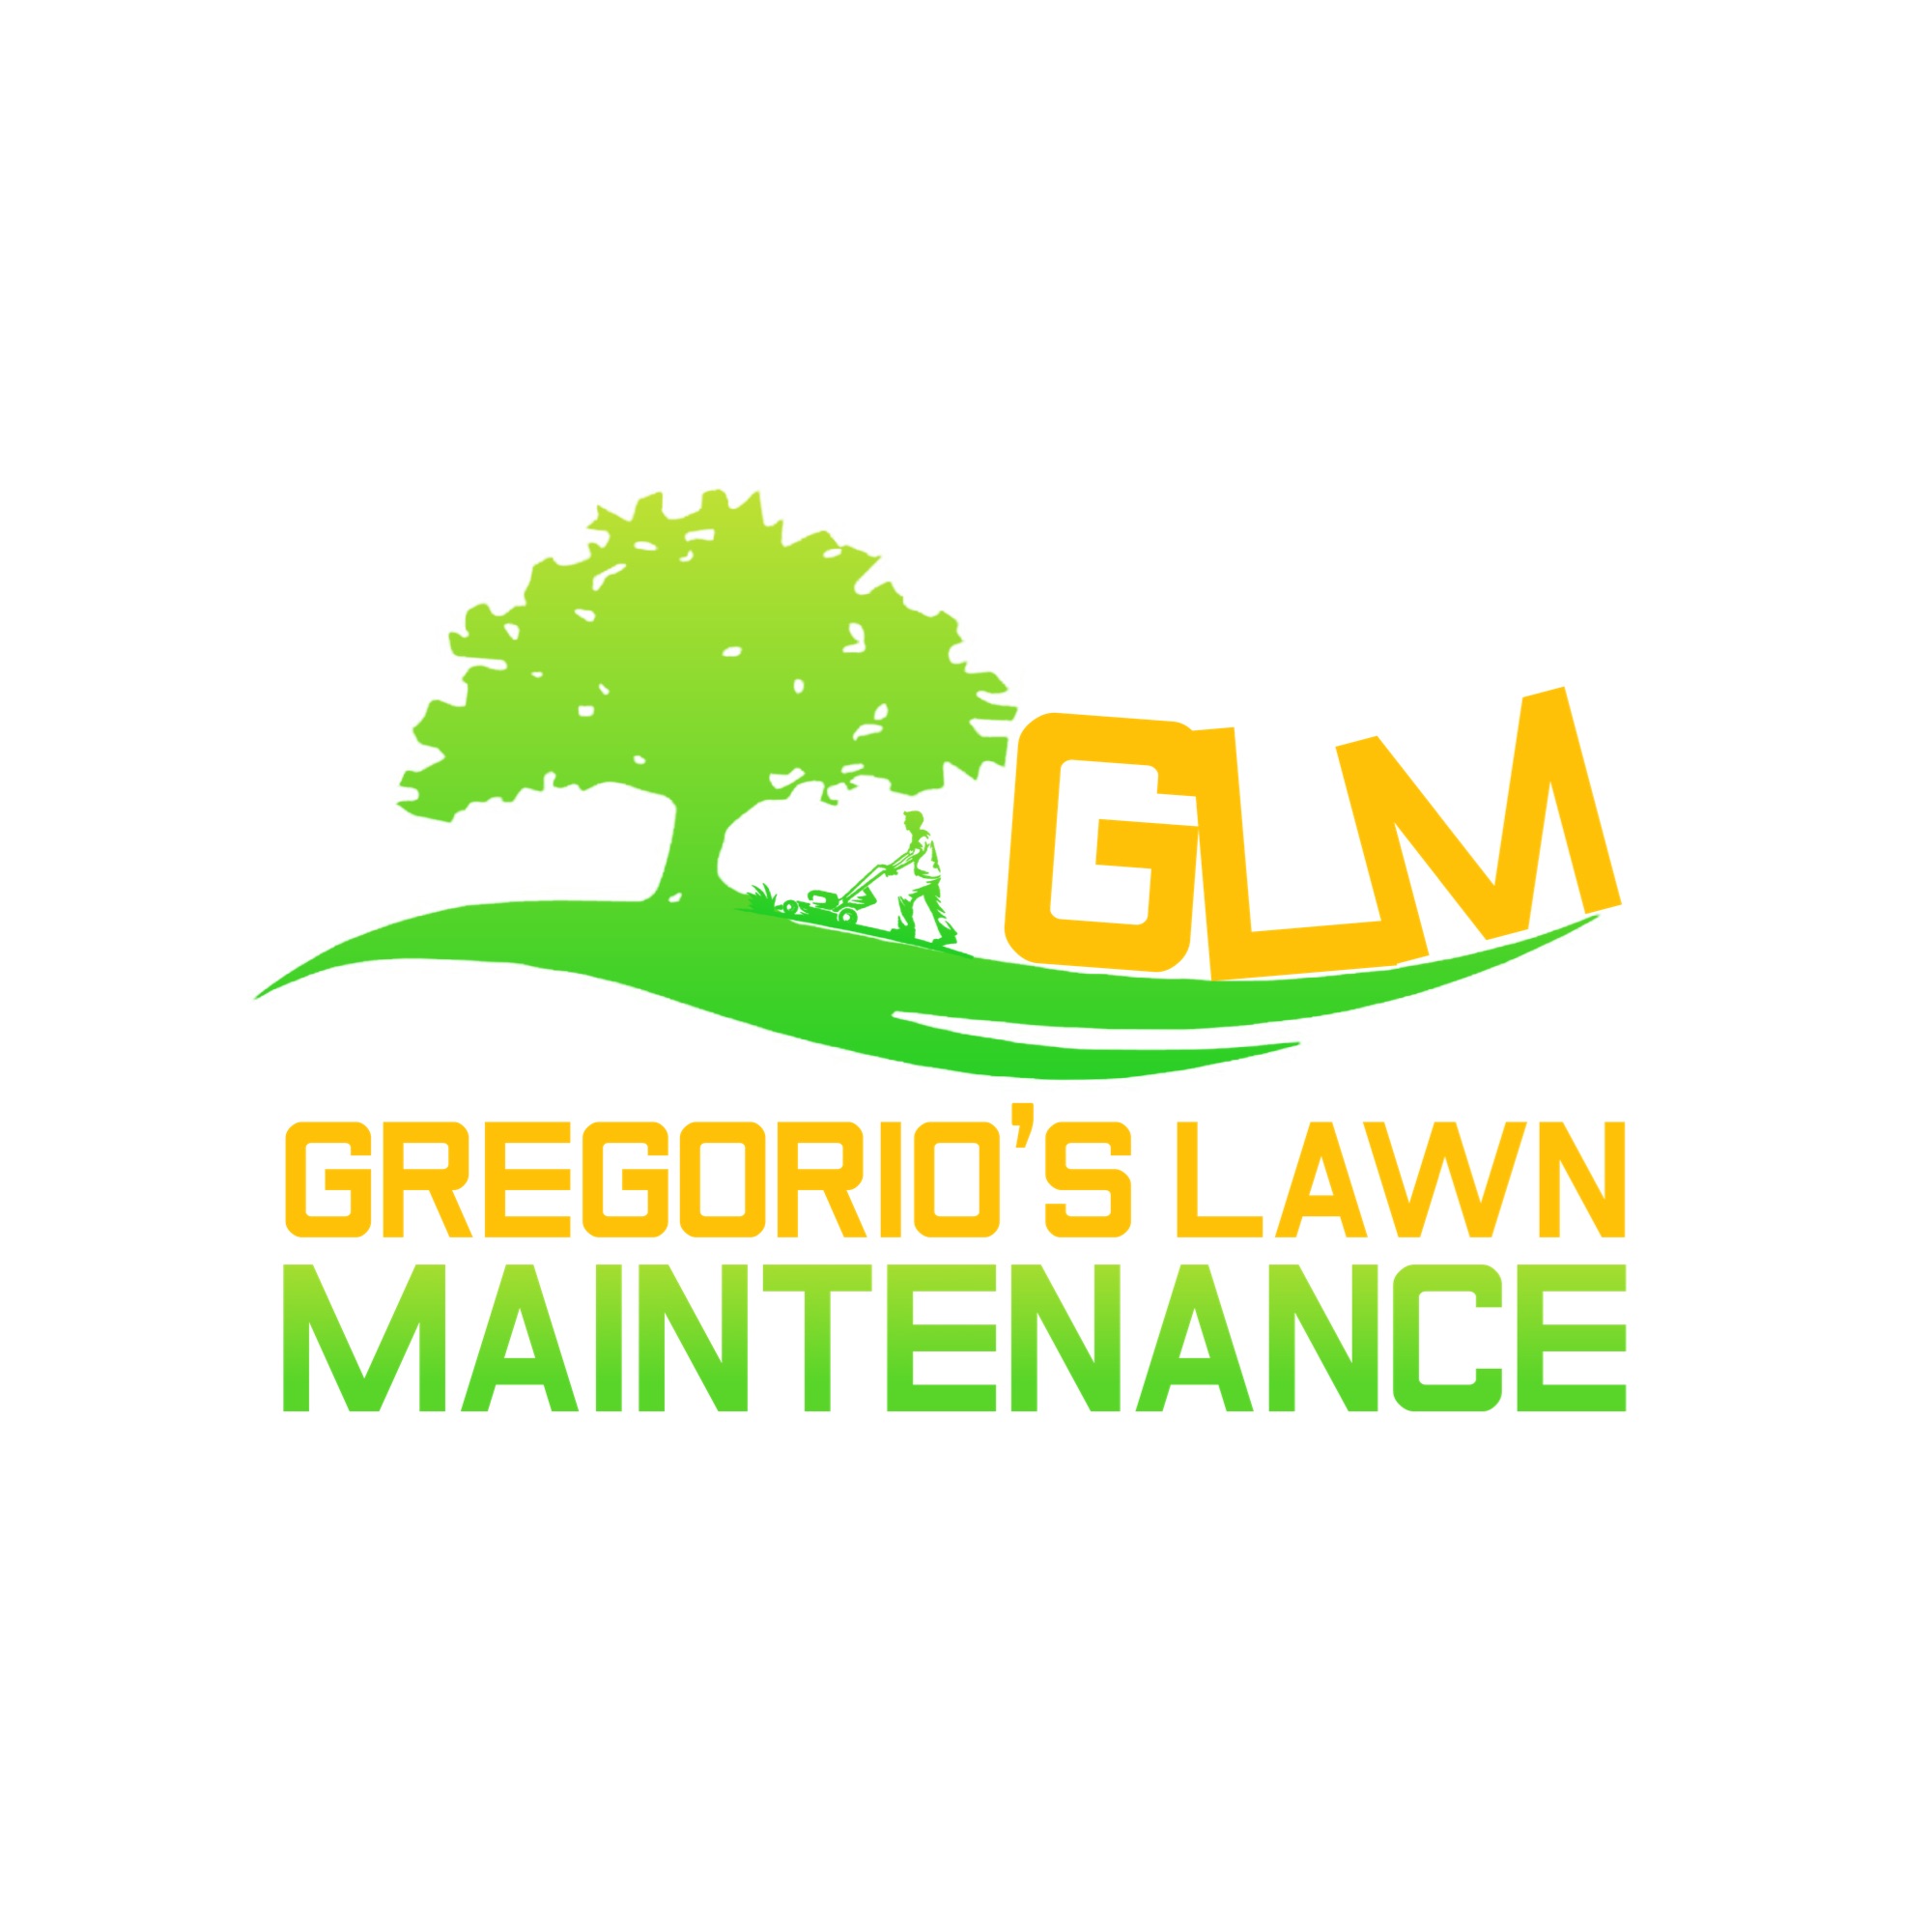 Gregorio's Lawn Maintenance Logo